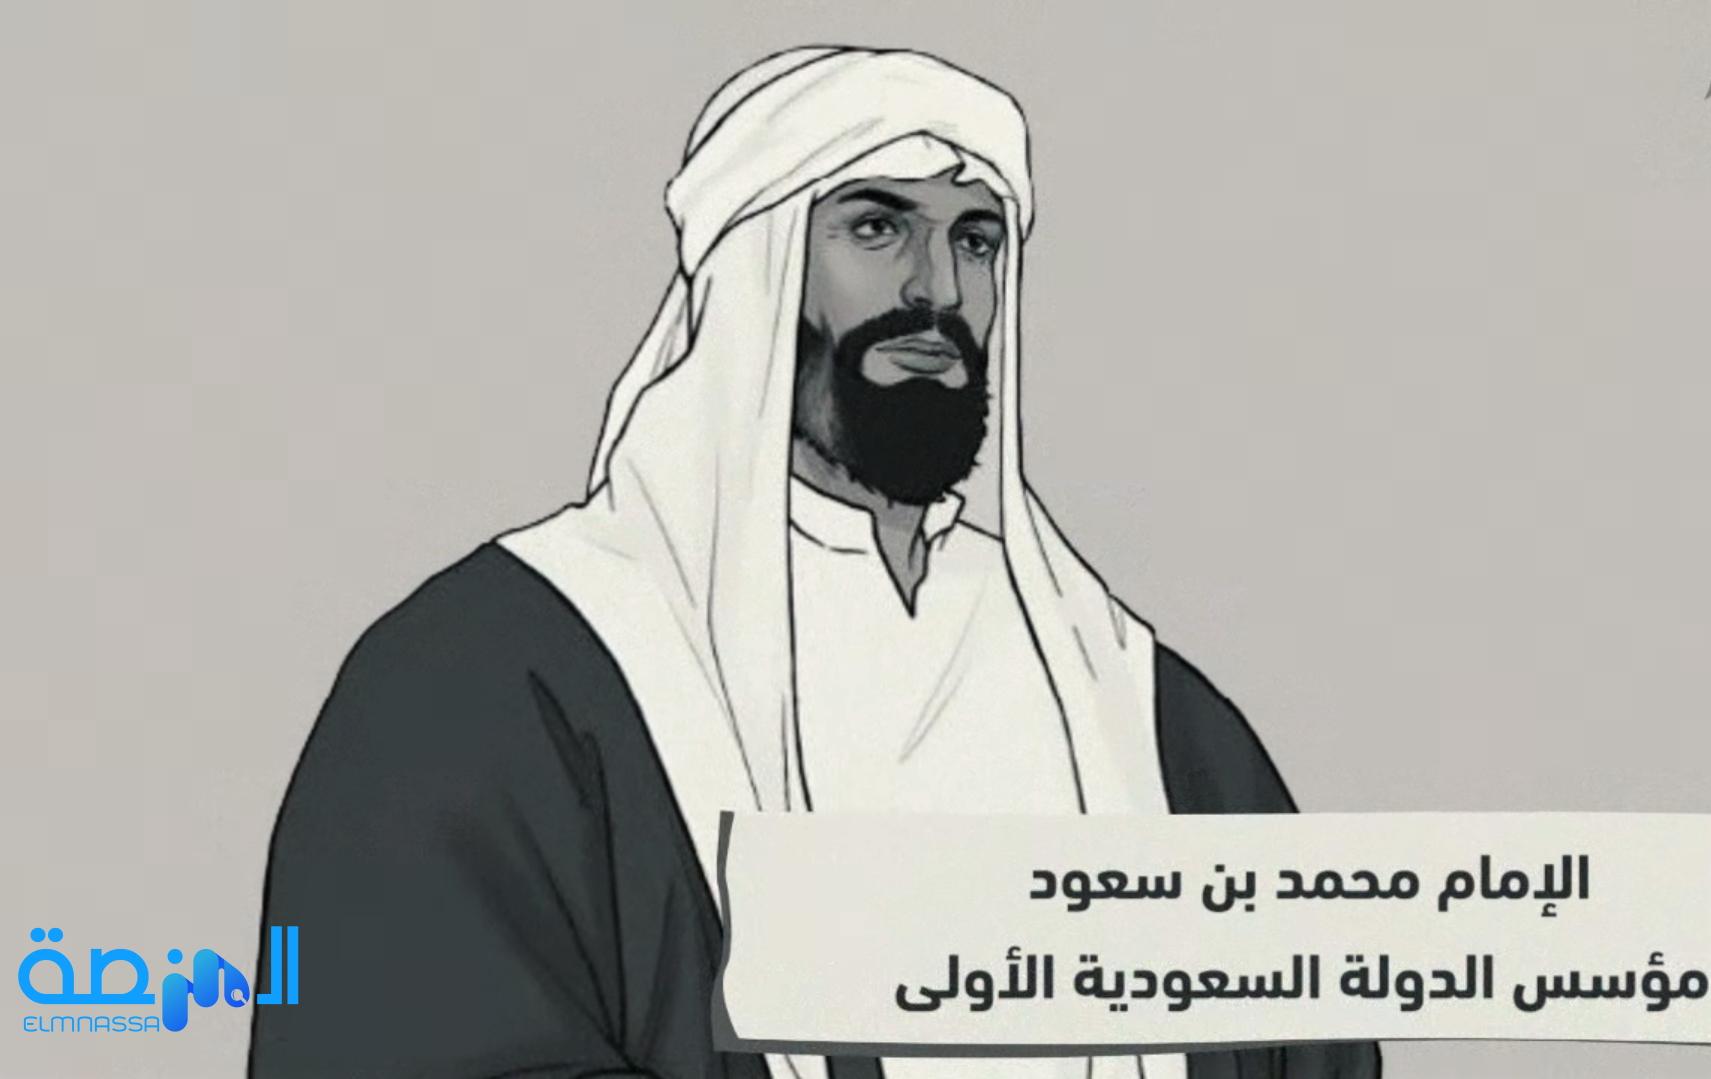 الإمام محمد بن سعود مؤسس الدولة السعودية الأولى